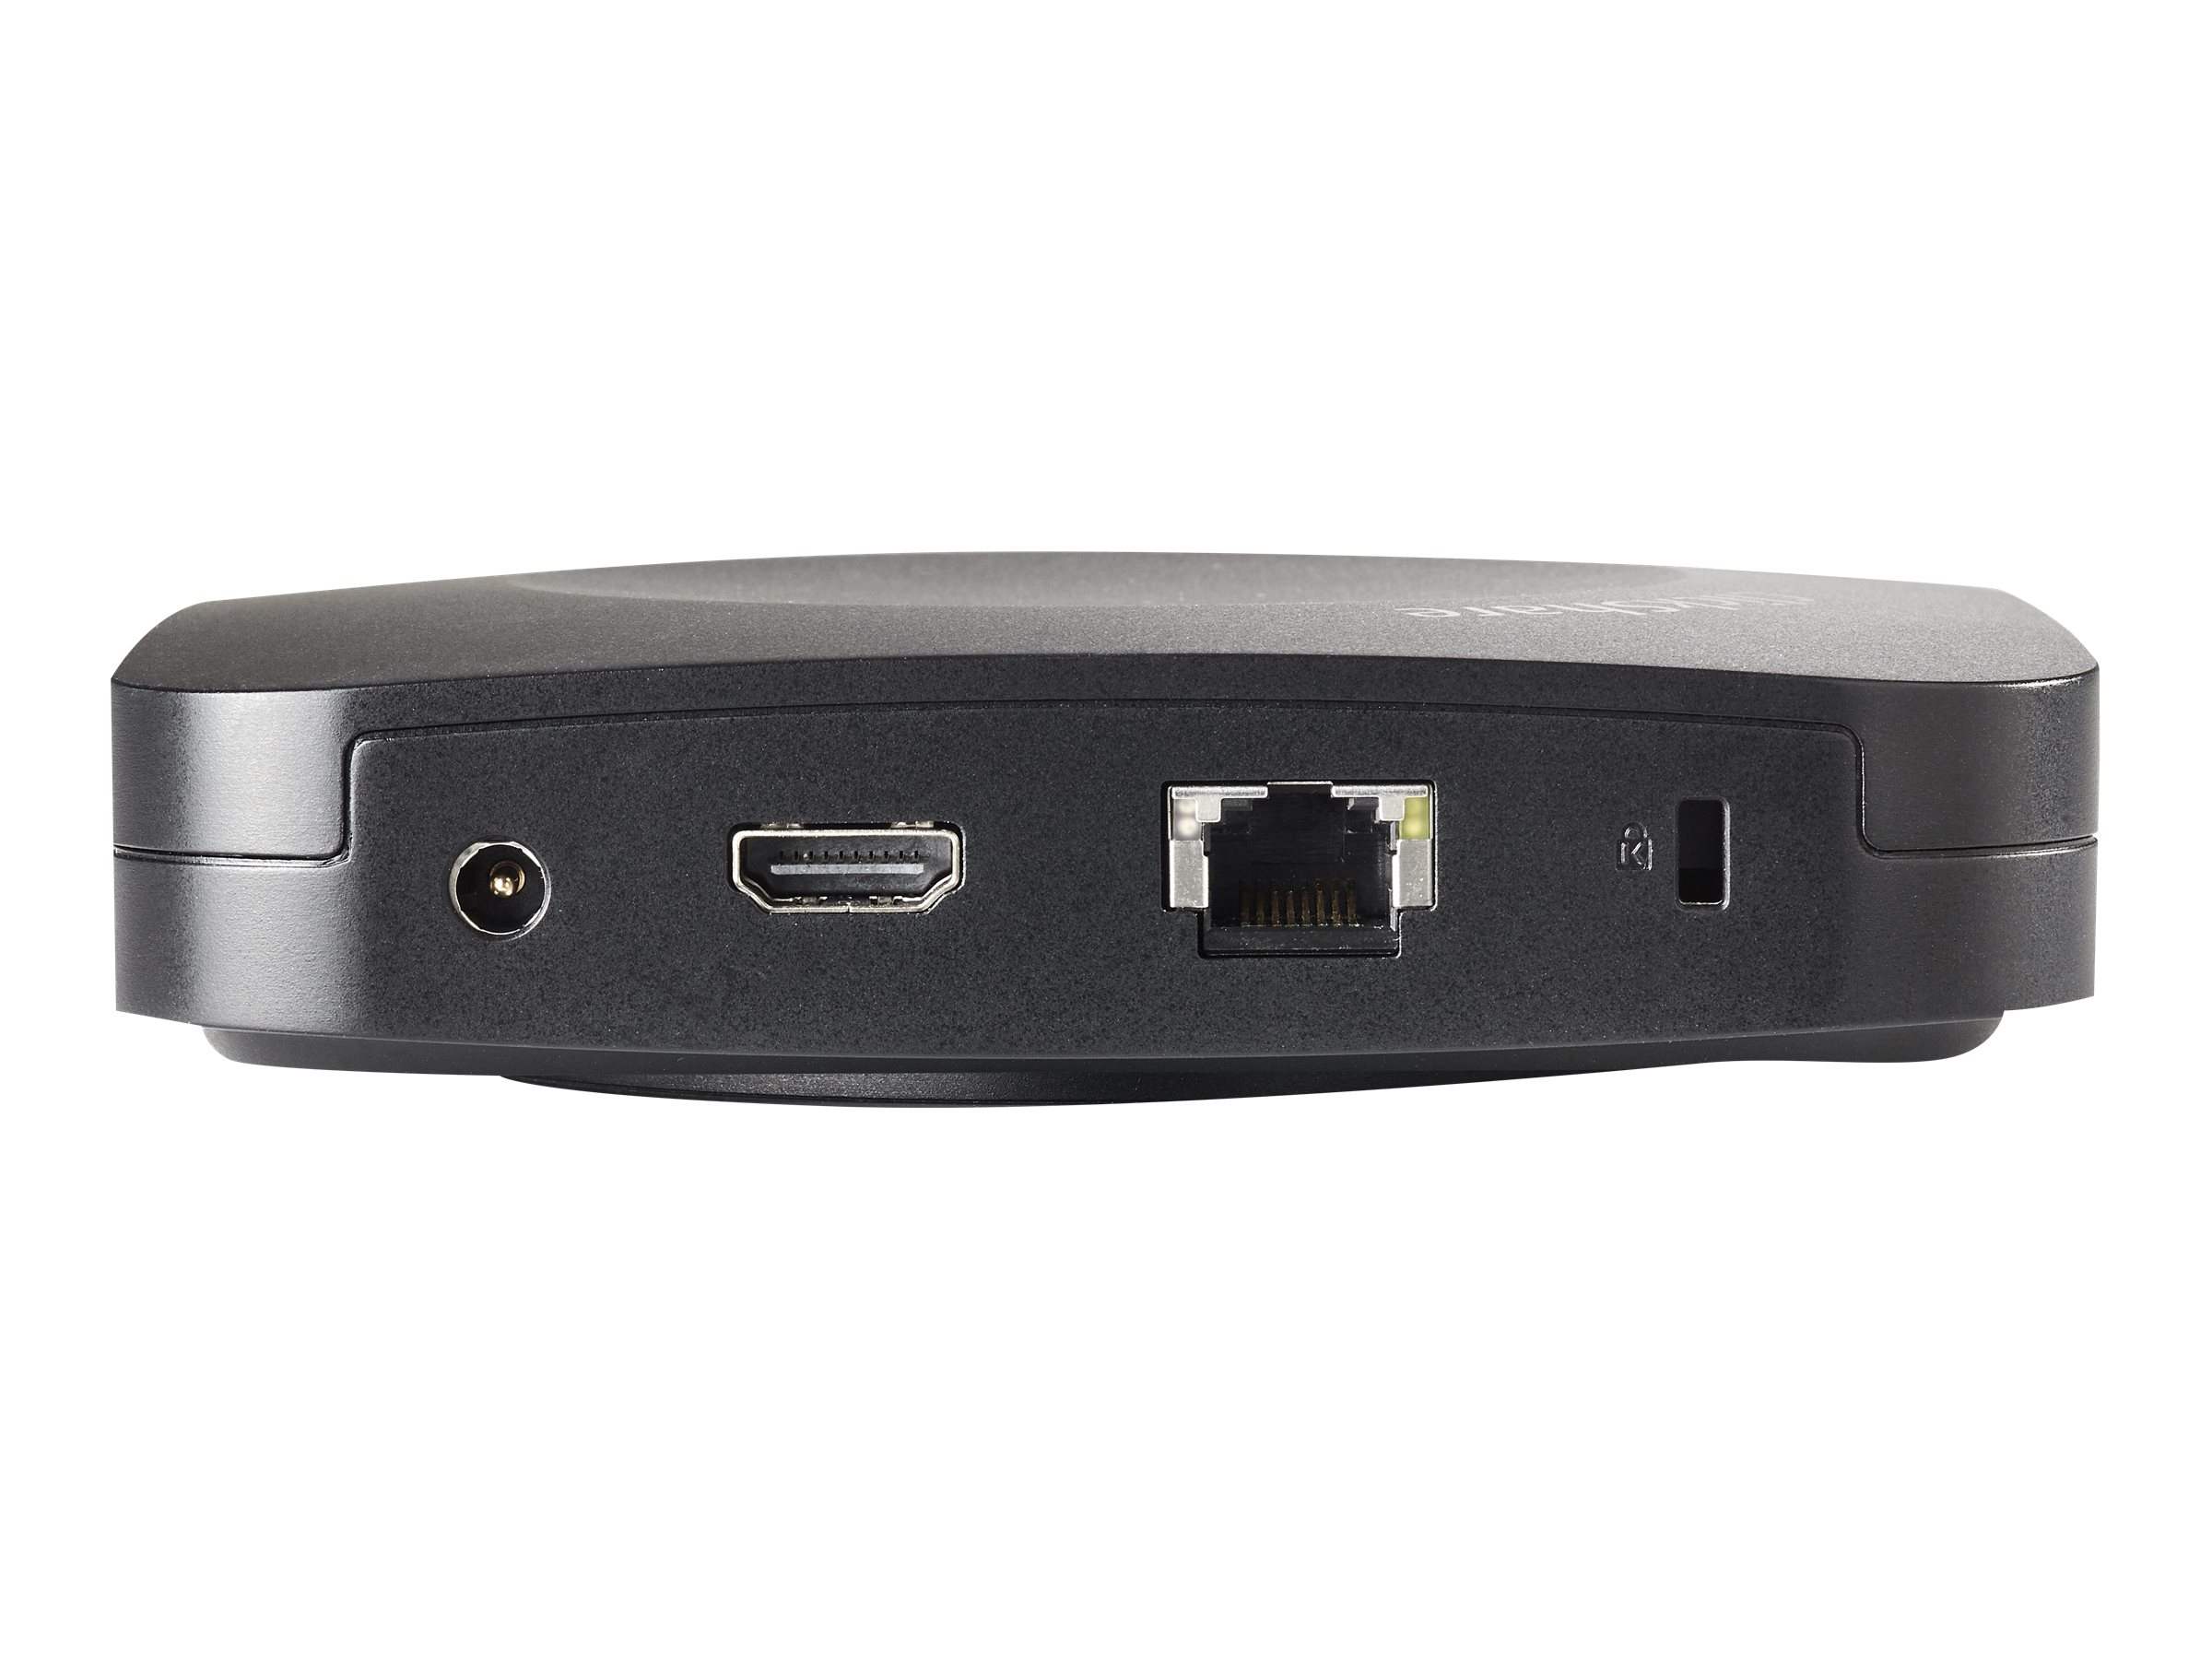 Barco ClickShare CX-20 GEN2 - drahtloses Konferenzsystem für kleine Räume - 1 x USB-C Button